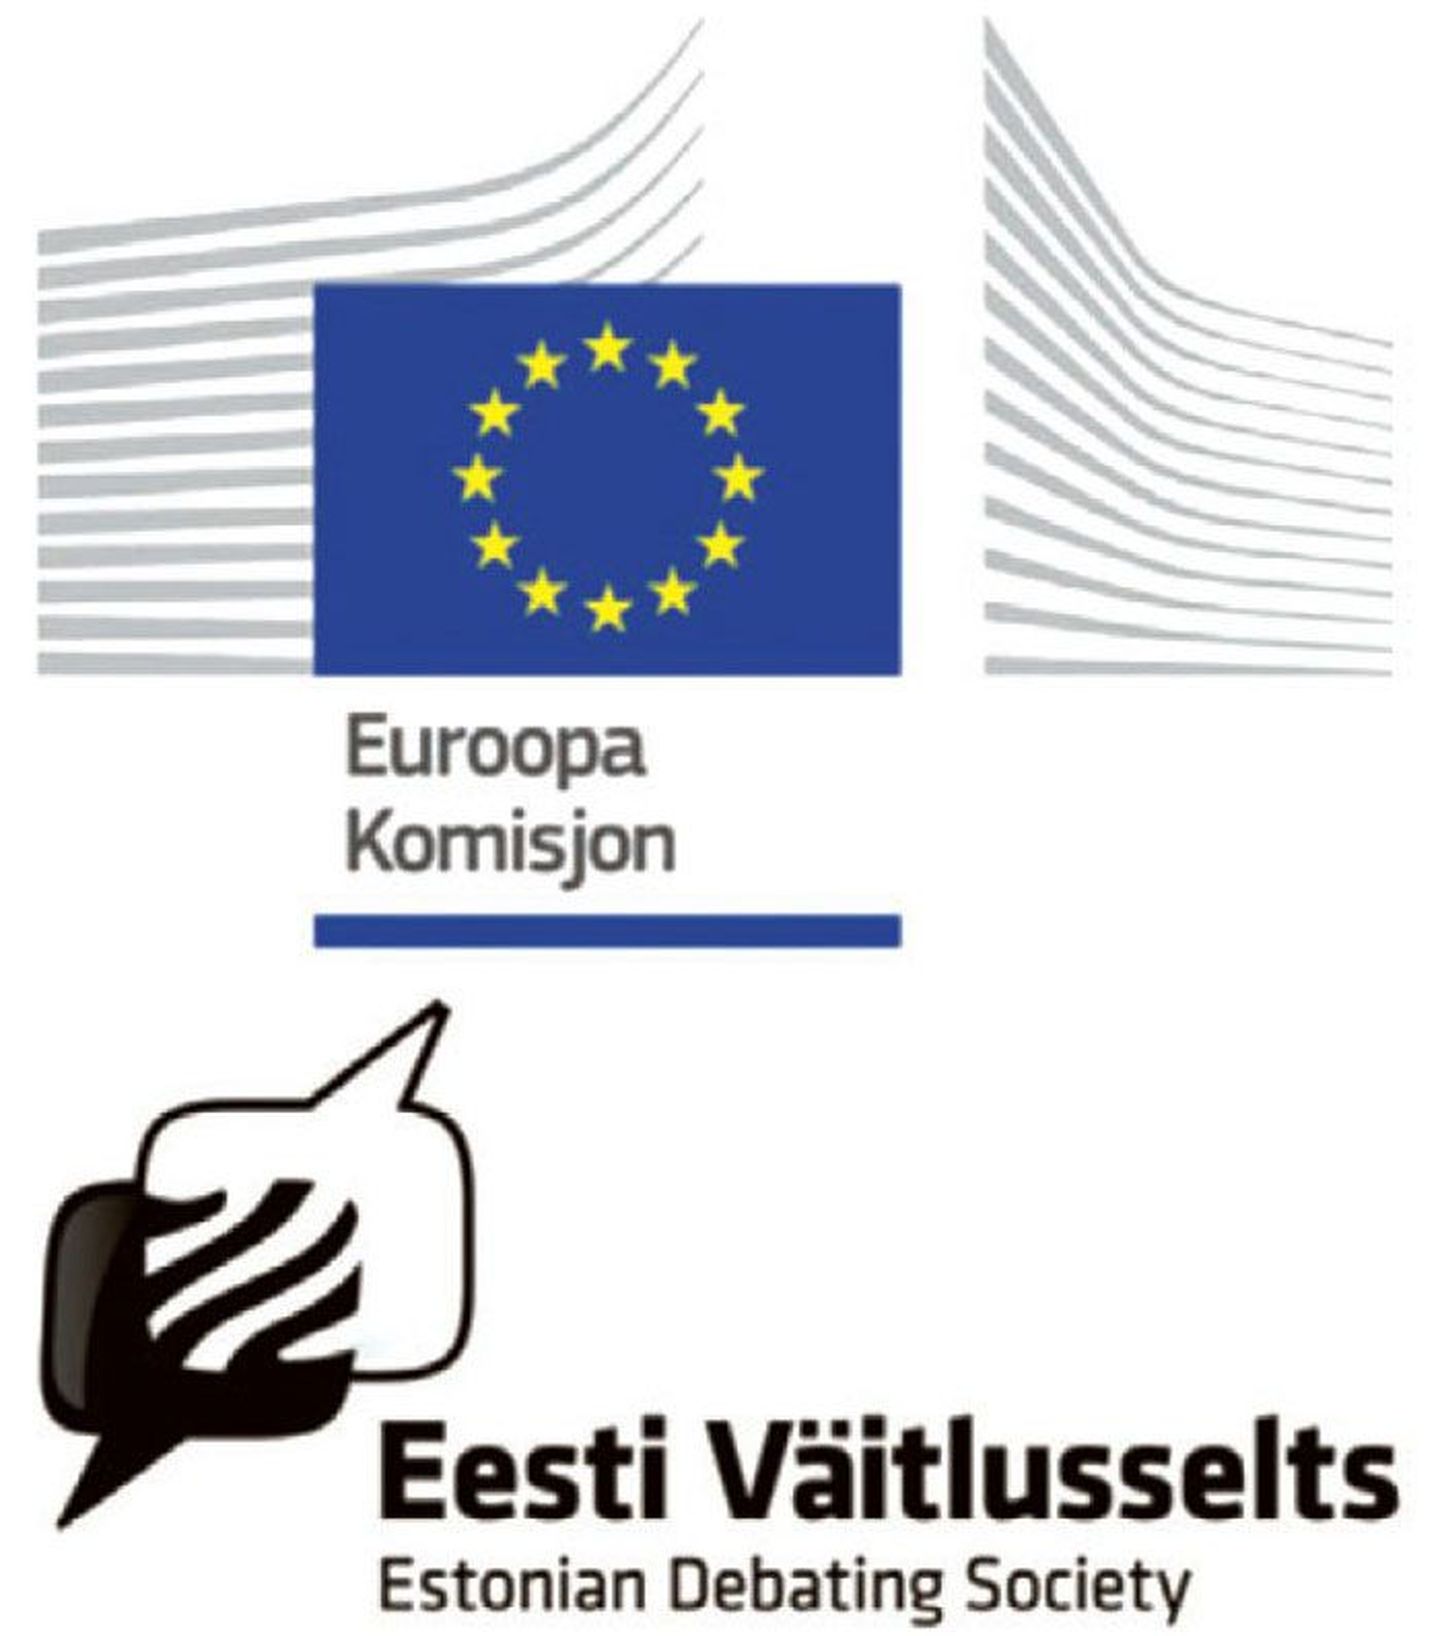 Online-väitlus valmis Postimehe, Eesti Väitlusseltsi ja Euroopa Komisjoni Eesti esinduse koostöös, olles neljas pikemast euroliidu-teemaliste väitluste sarjast.